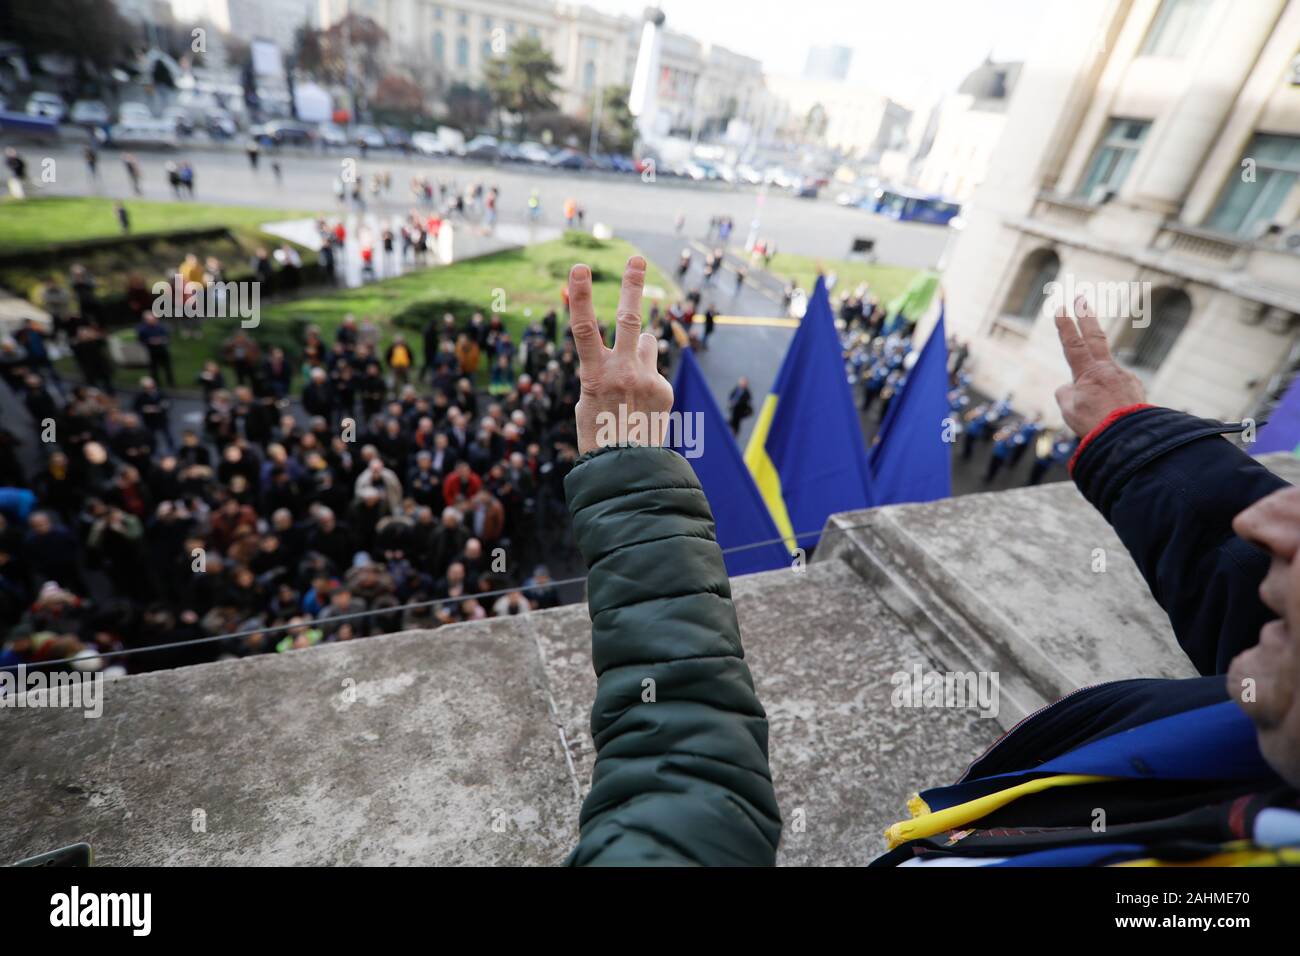 Le persone mostrano il segno della vittoria dal balcone dove Nicolae Ceausescu ha tenuto il suo ultimo discorso durante il rumeno anti rivoluzione comunista nel 1989. Foto Stock